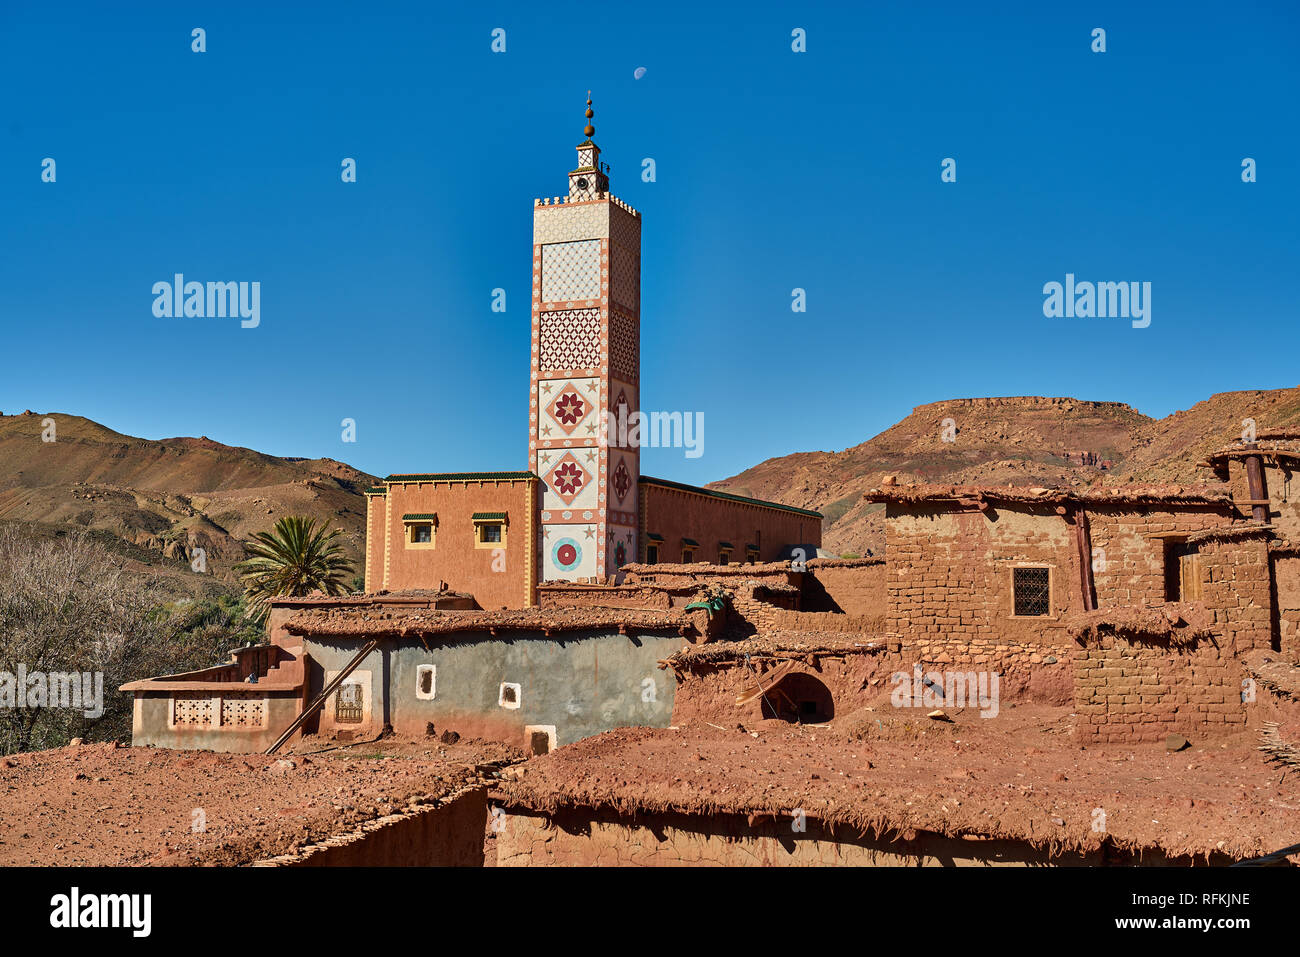 Traditionelle Dorfhäuser aus Lehmziegeln und farbenfroh dekoriertes Minarett/Moschee. In der Nähe von Tiseldei, Provinz Ouarzazate, Marokko Stockfoto